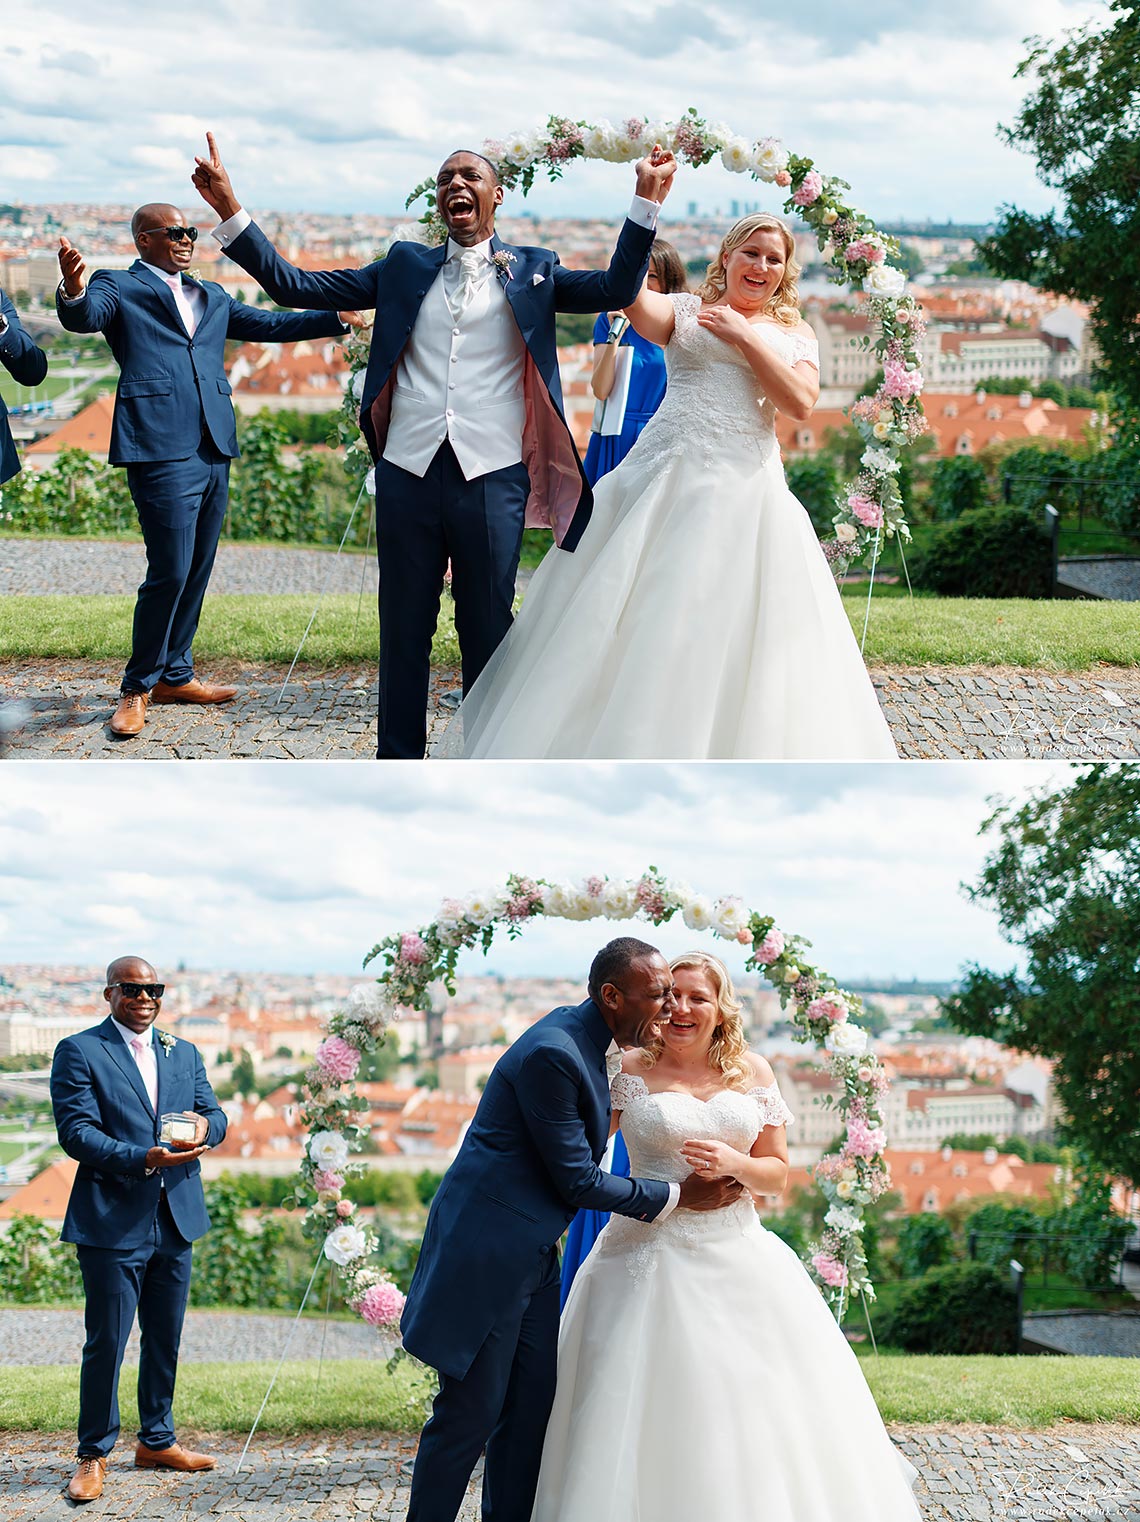 šťastní novomanželé po svatebním obřadu ve Villa Richter